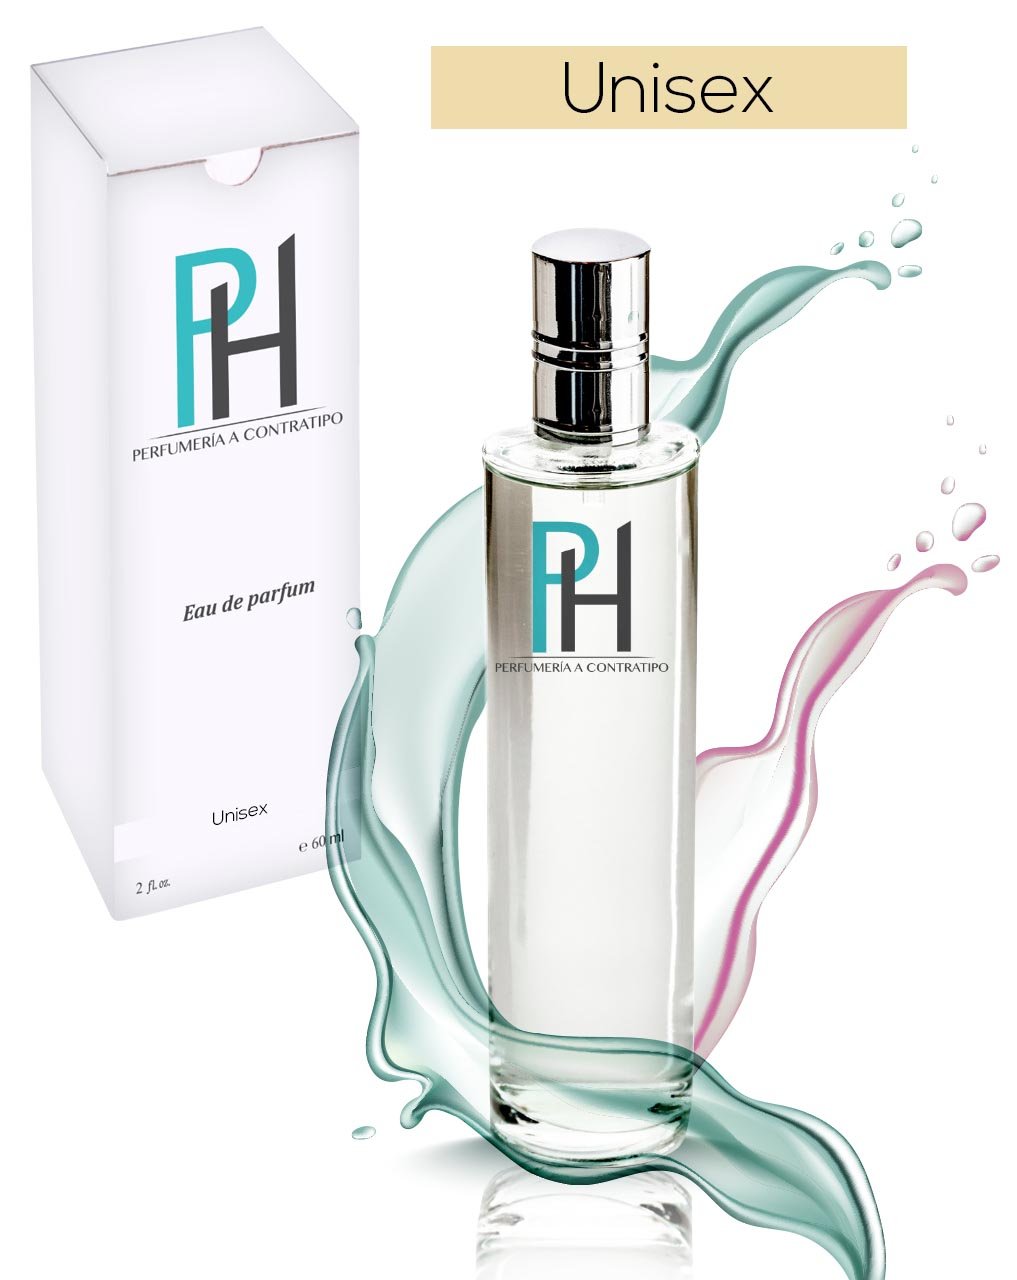 Perfume Another 13 de 60 ml - PH Perfumería a Contratipo